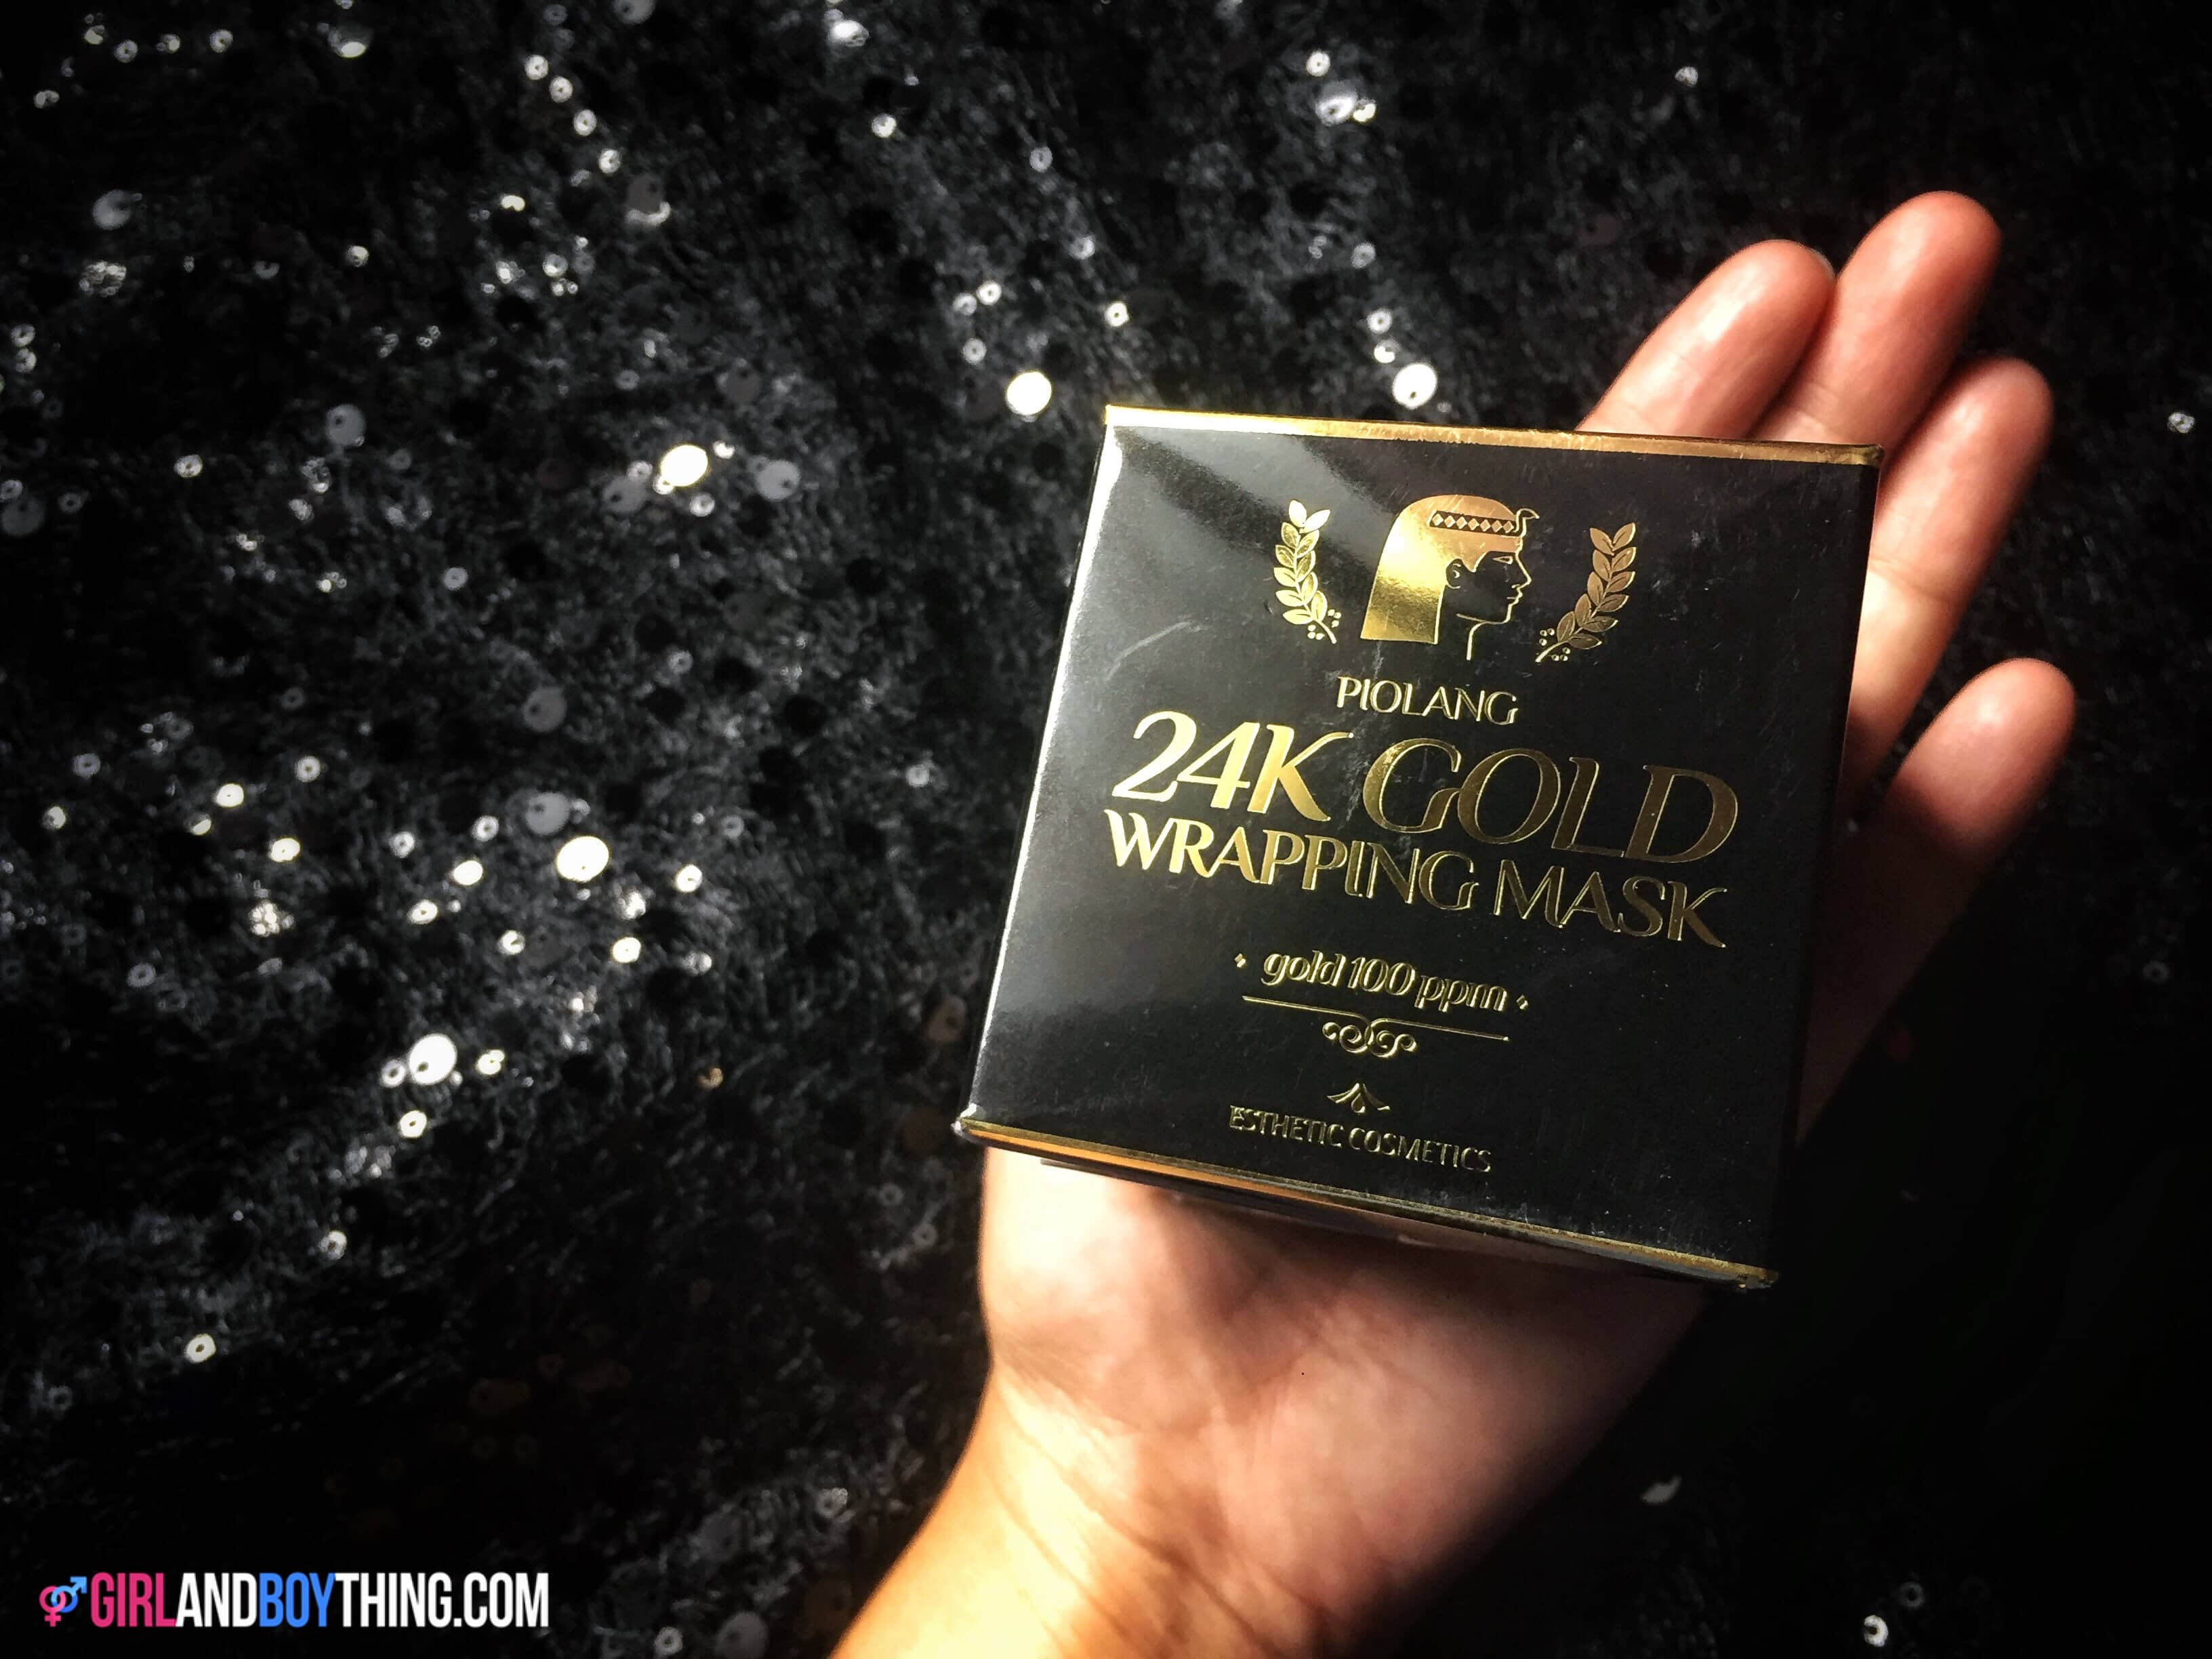 PIOLANG 24K Gold Mask Review